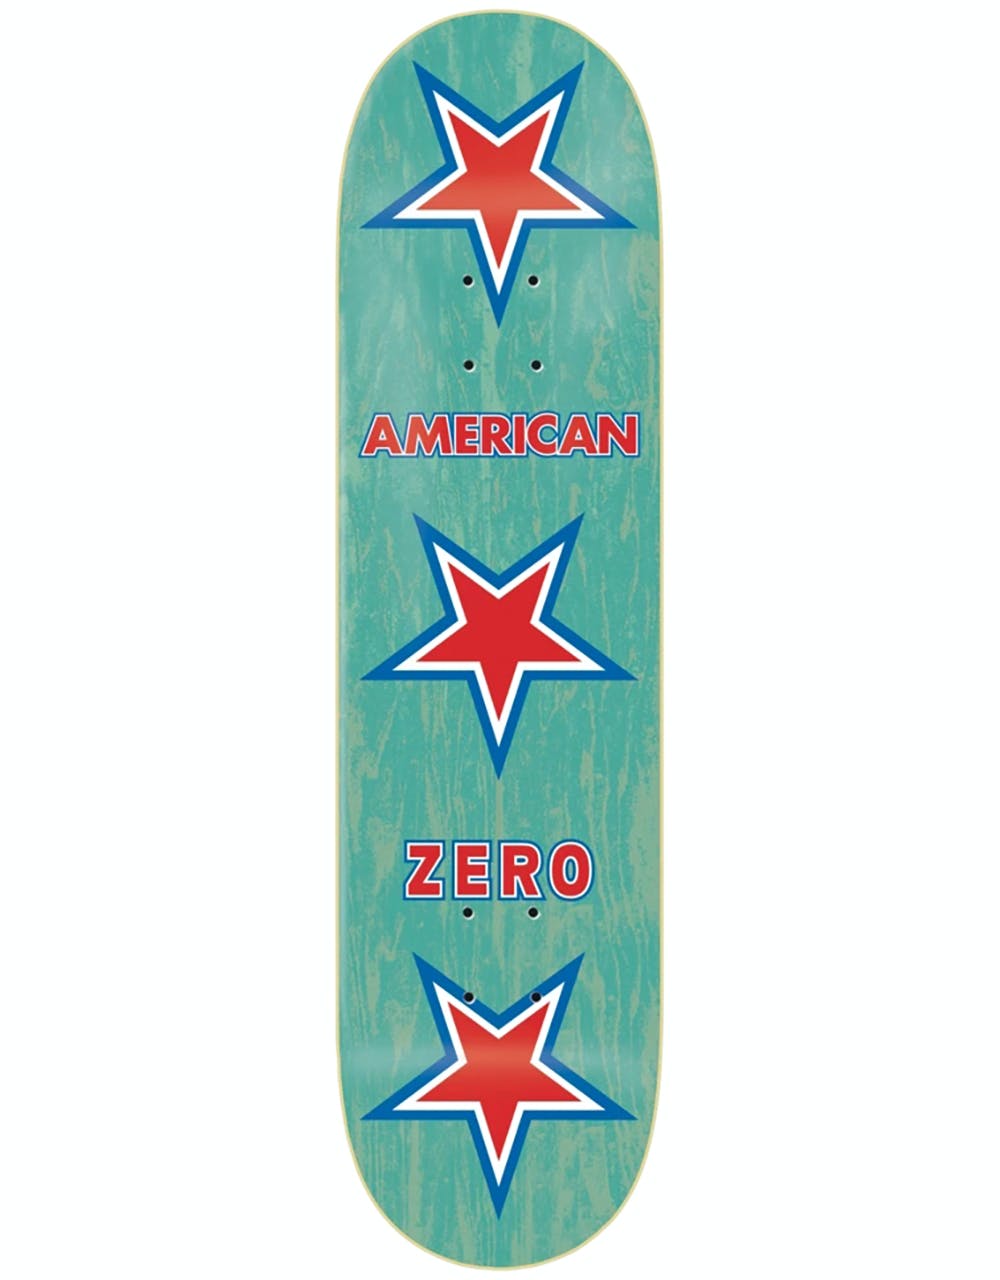 Zero American Zero Skateboard Deck - 8.375"